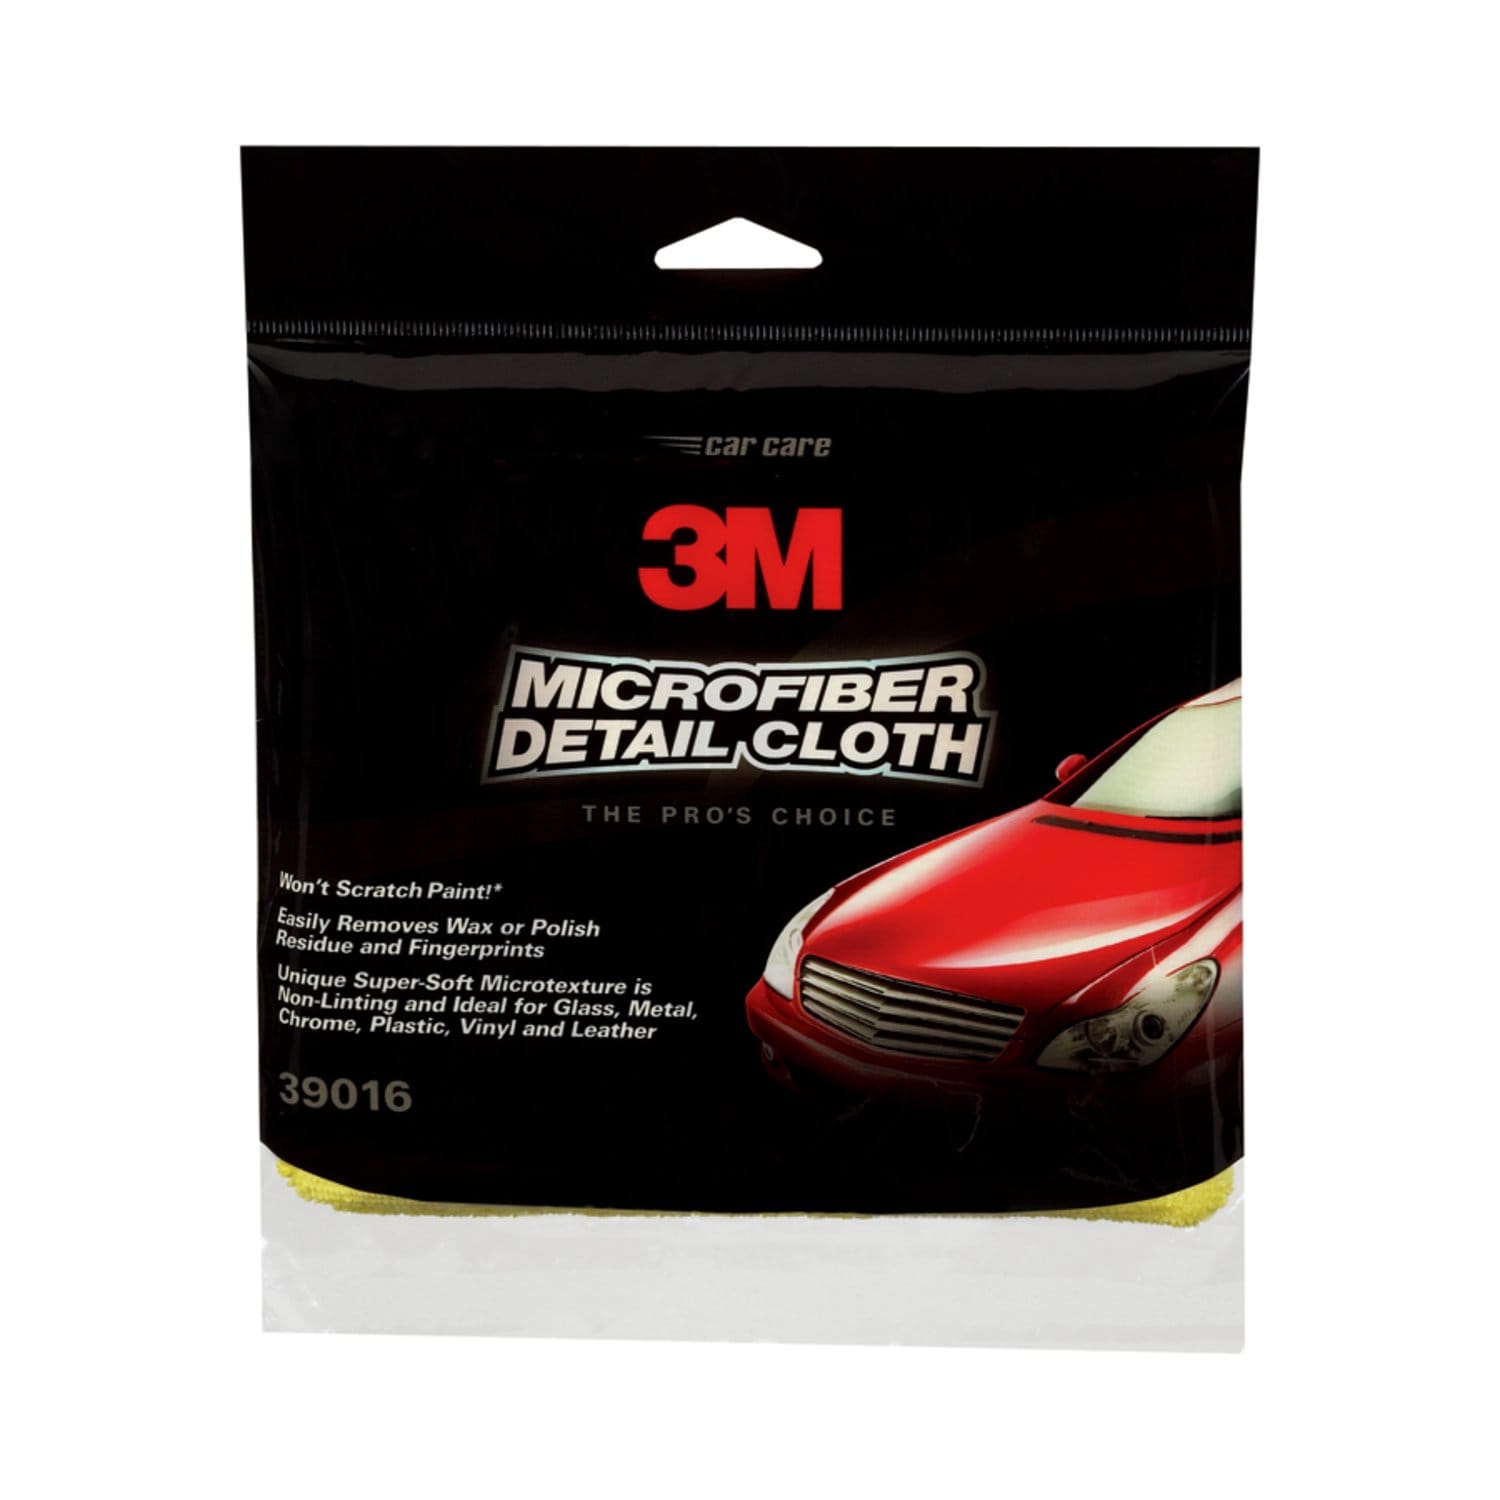 7100114417 - 3M Microfiber Detail Cloth Clip Strip 39016, Yellow, 1/pk, 12/1